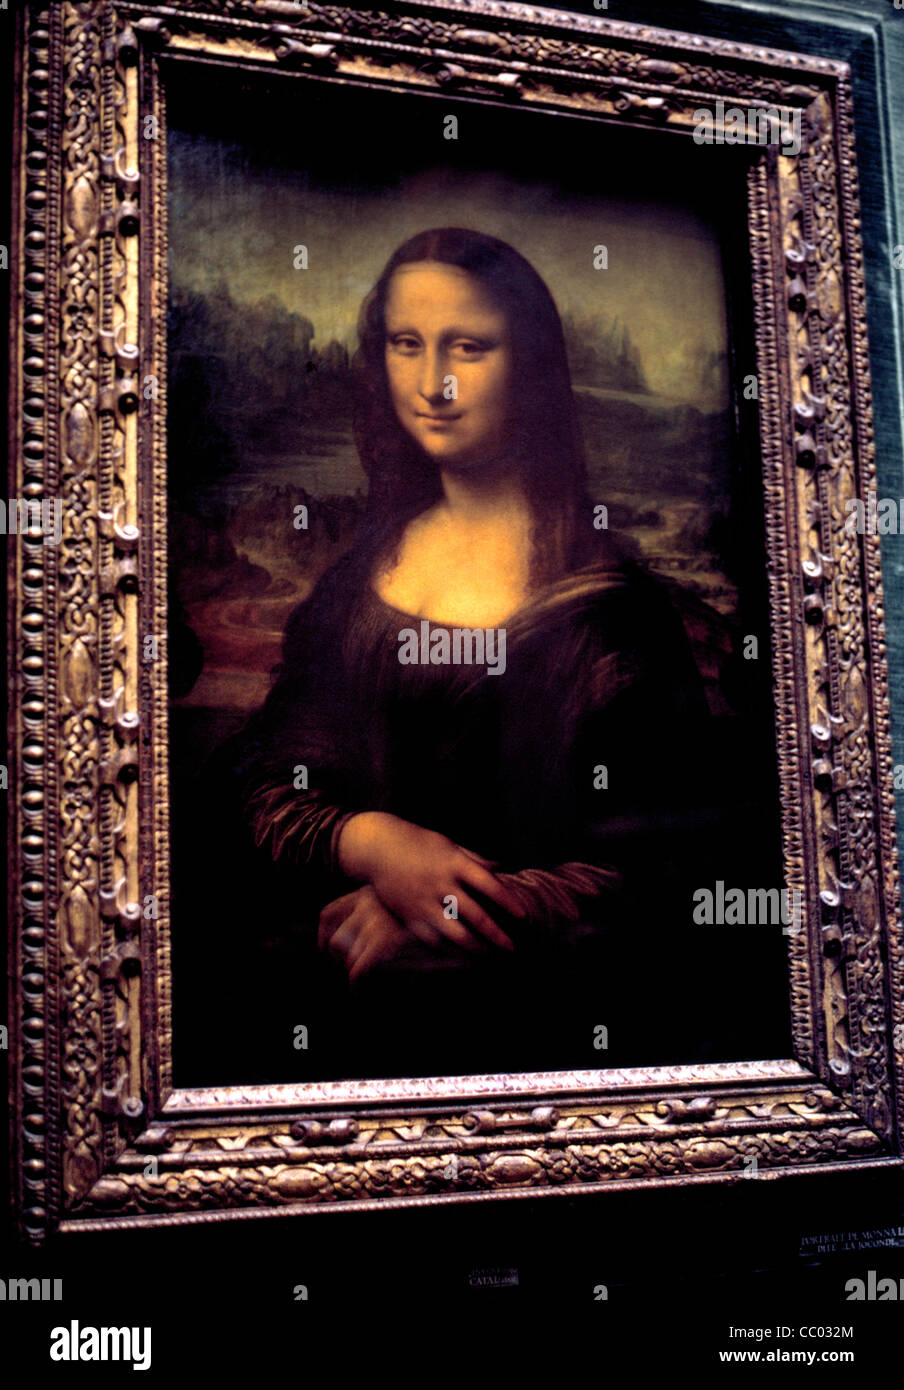 Ce monde-célèbre portrait de Mona Lisa est une peinture à l'huile par l'artiste italien Leonardo da Vinci à l'affiche au Musée du Louvre à Paris, France. Banque D'Images